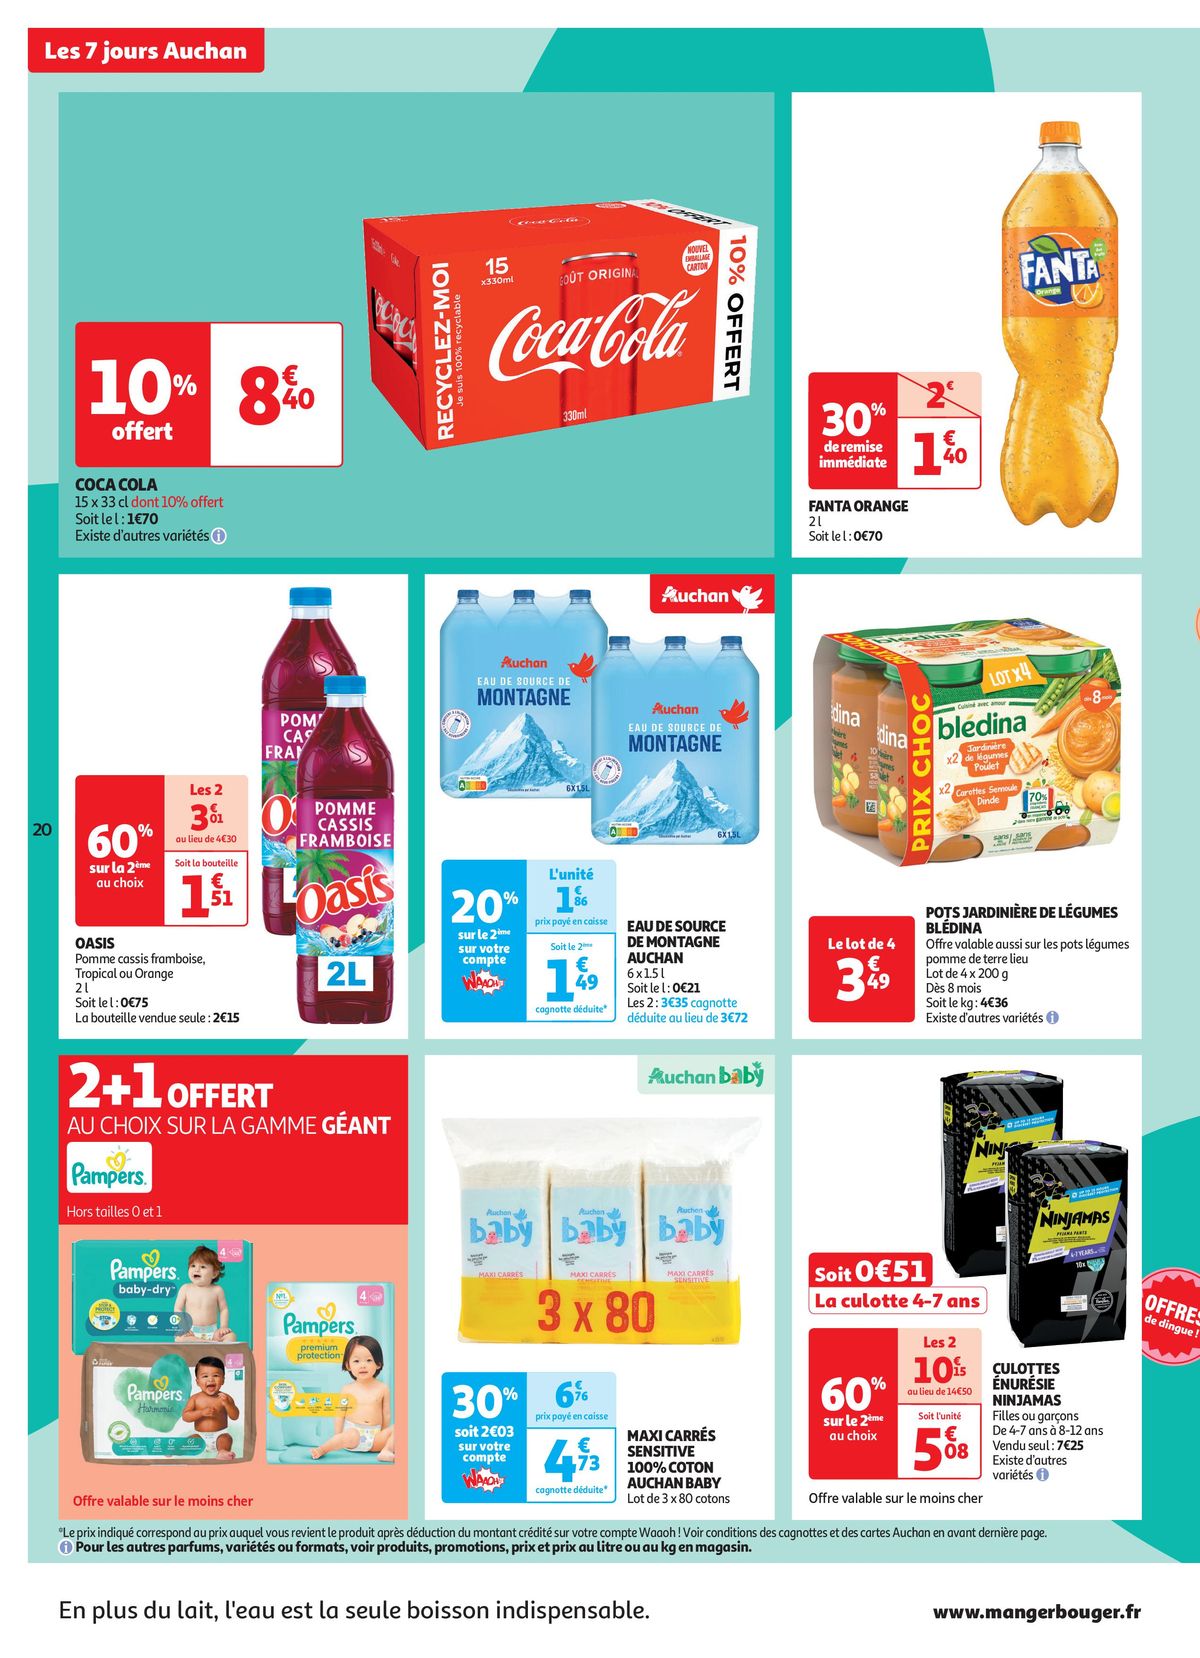 Catalogue C'est les 7 jours Auchan dans votre super !, page 00020